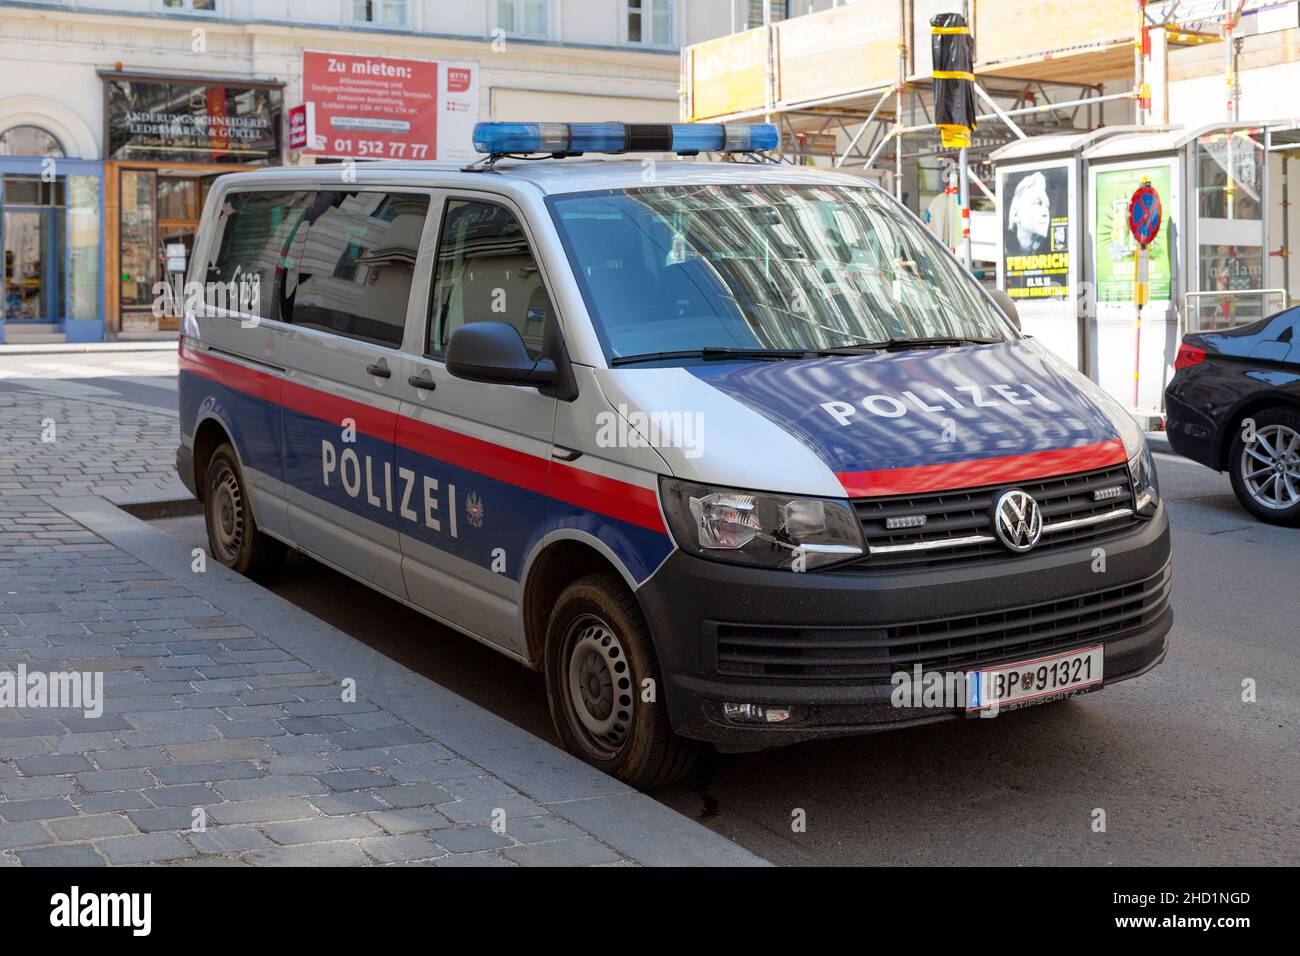 Vienne, Autriche - juin 17 2018 : véhicule de police stationné dans une rue du centre-ville. Banque D'Images